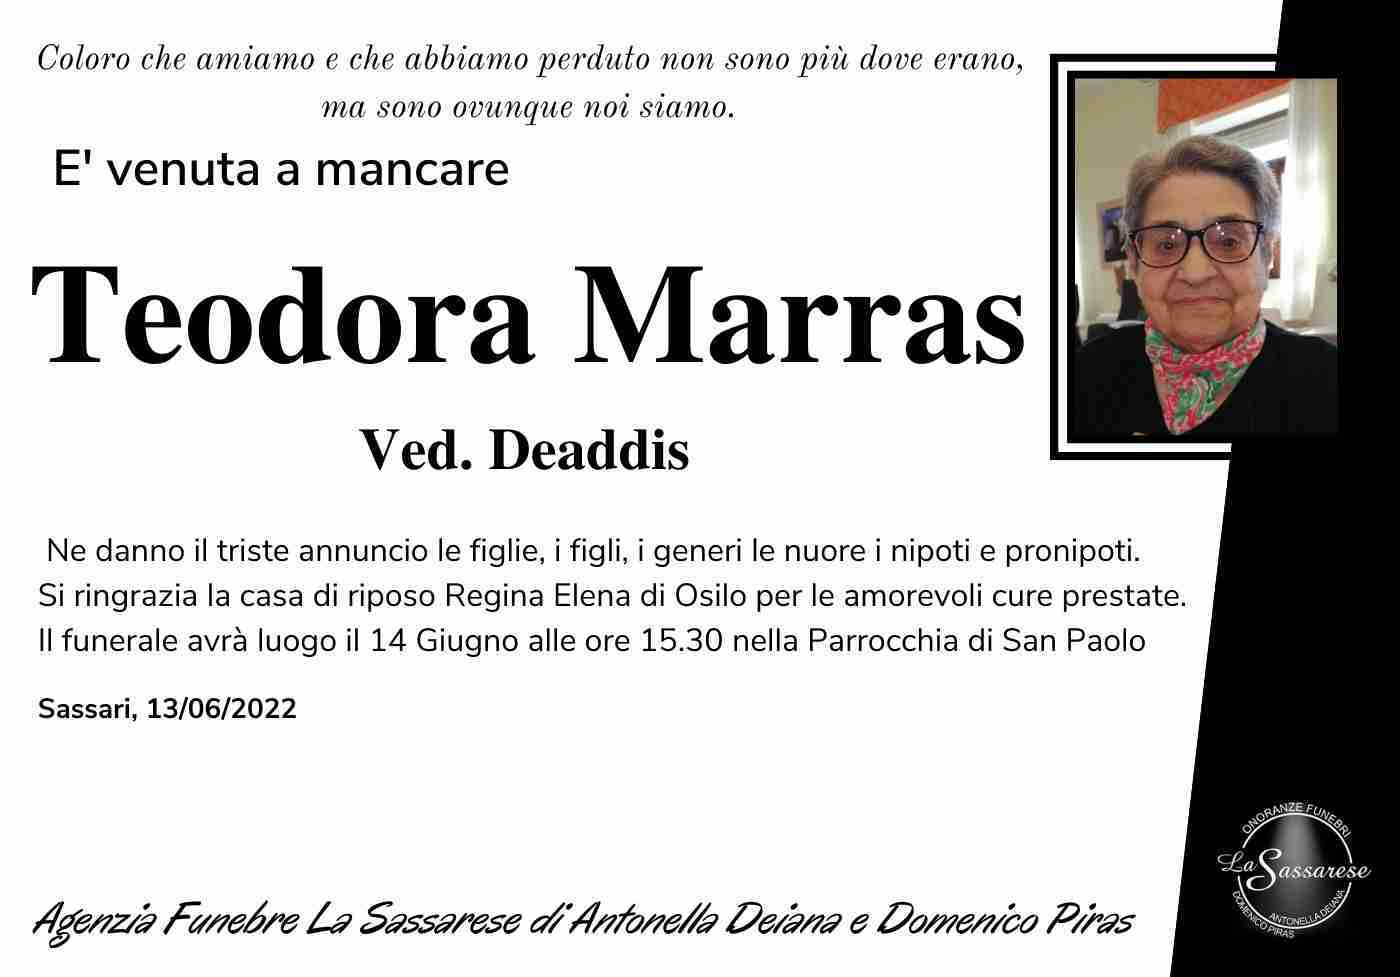 Teodora Marras